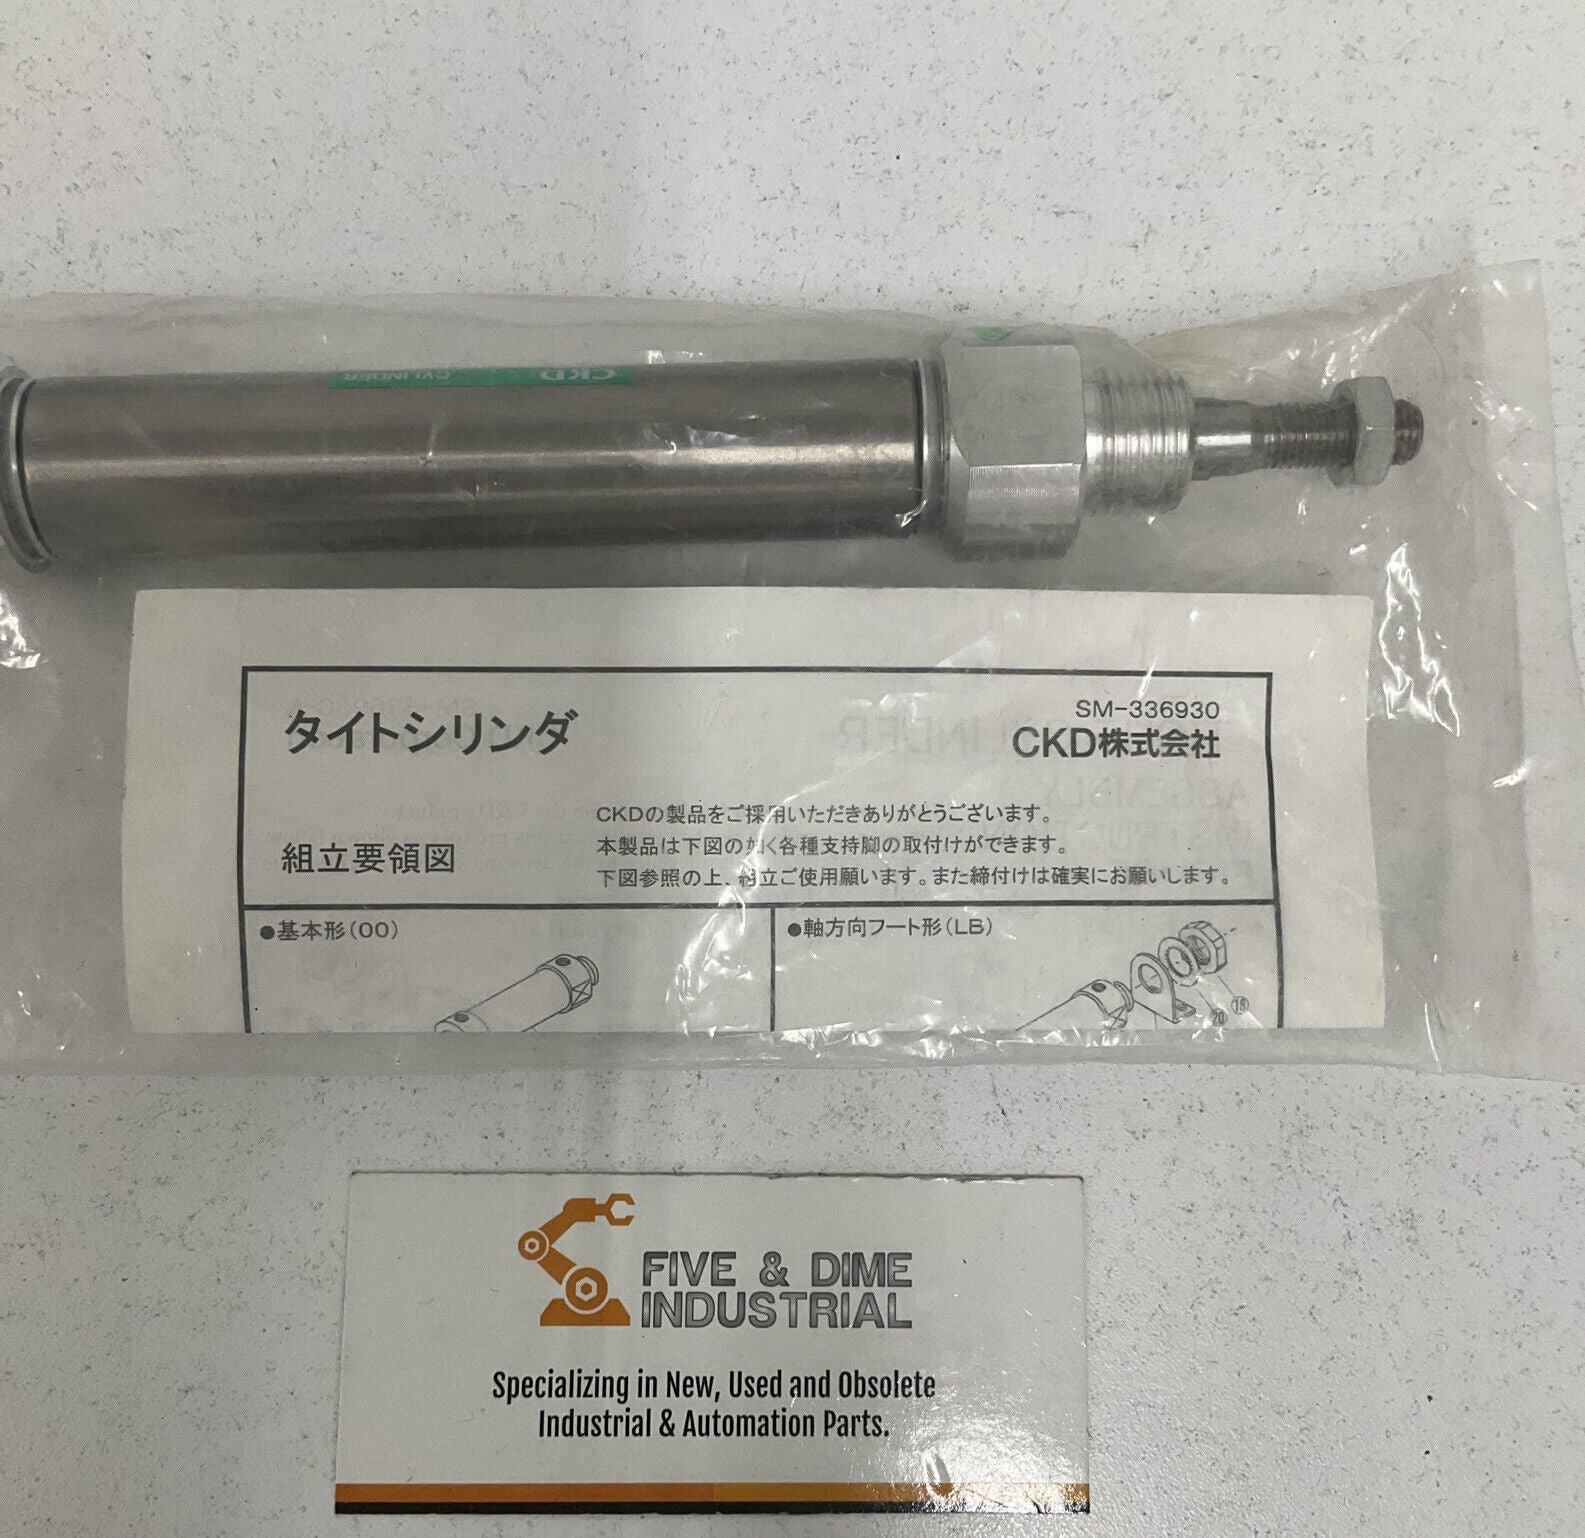 CKD CMK2-20-75 Pneumatic Cylinder Kit w/ Mounting Hardware & Reed Switch (YE170)